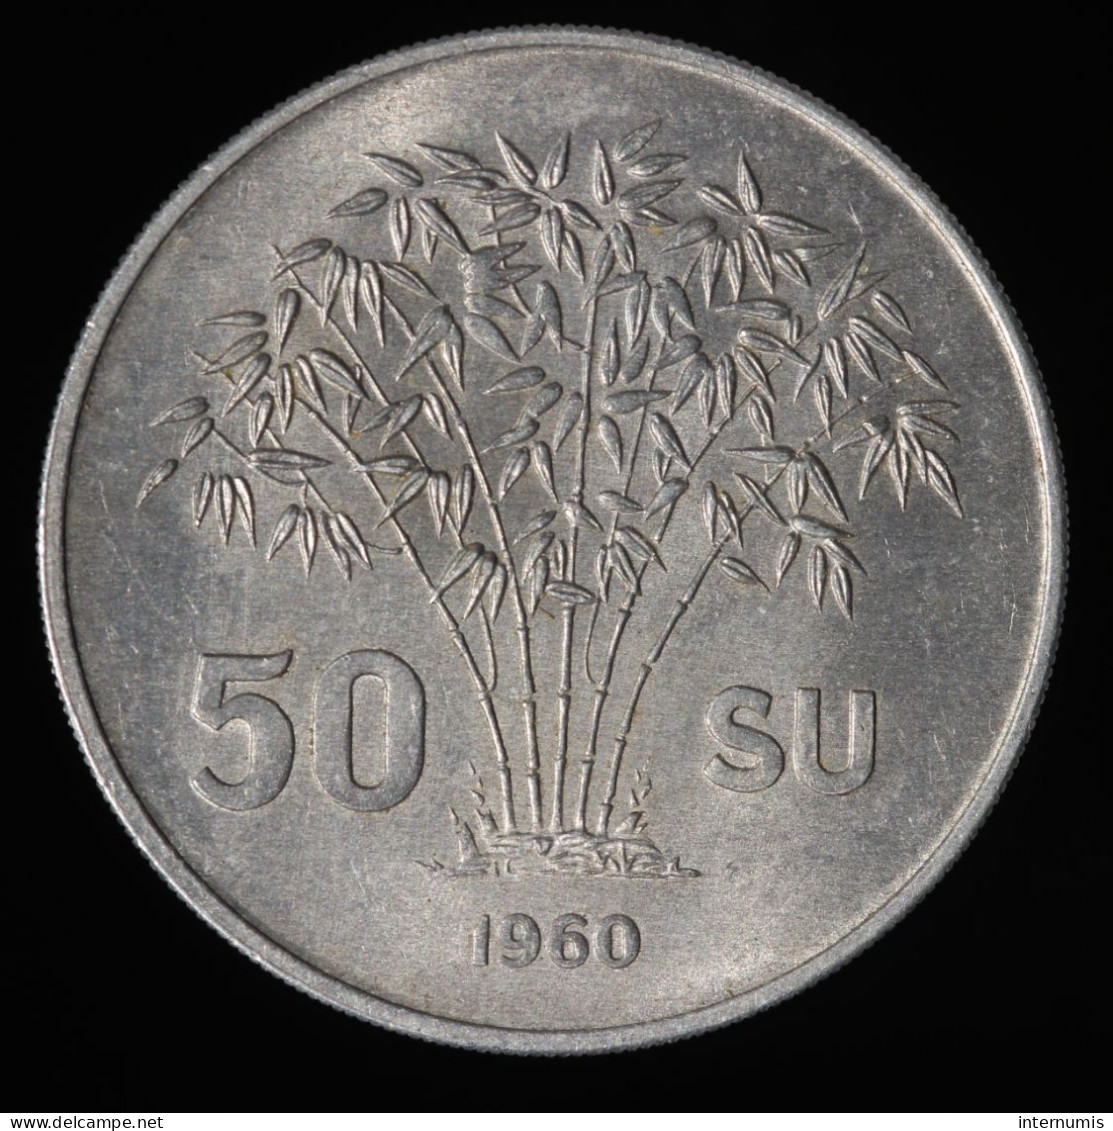  Vietnam, Ngo Dinh Diem, 50 Su, 1960, South Vietnam, Aluminium, SUP (AU),
KM#4 - Vietnam